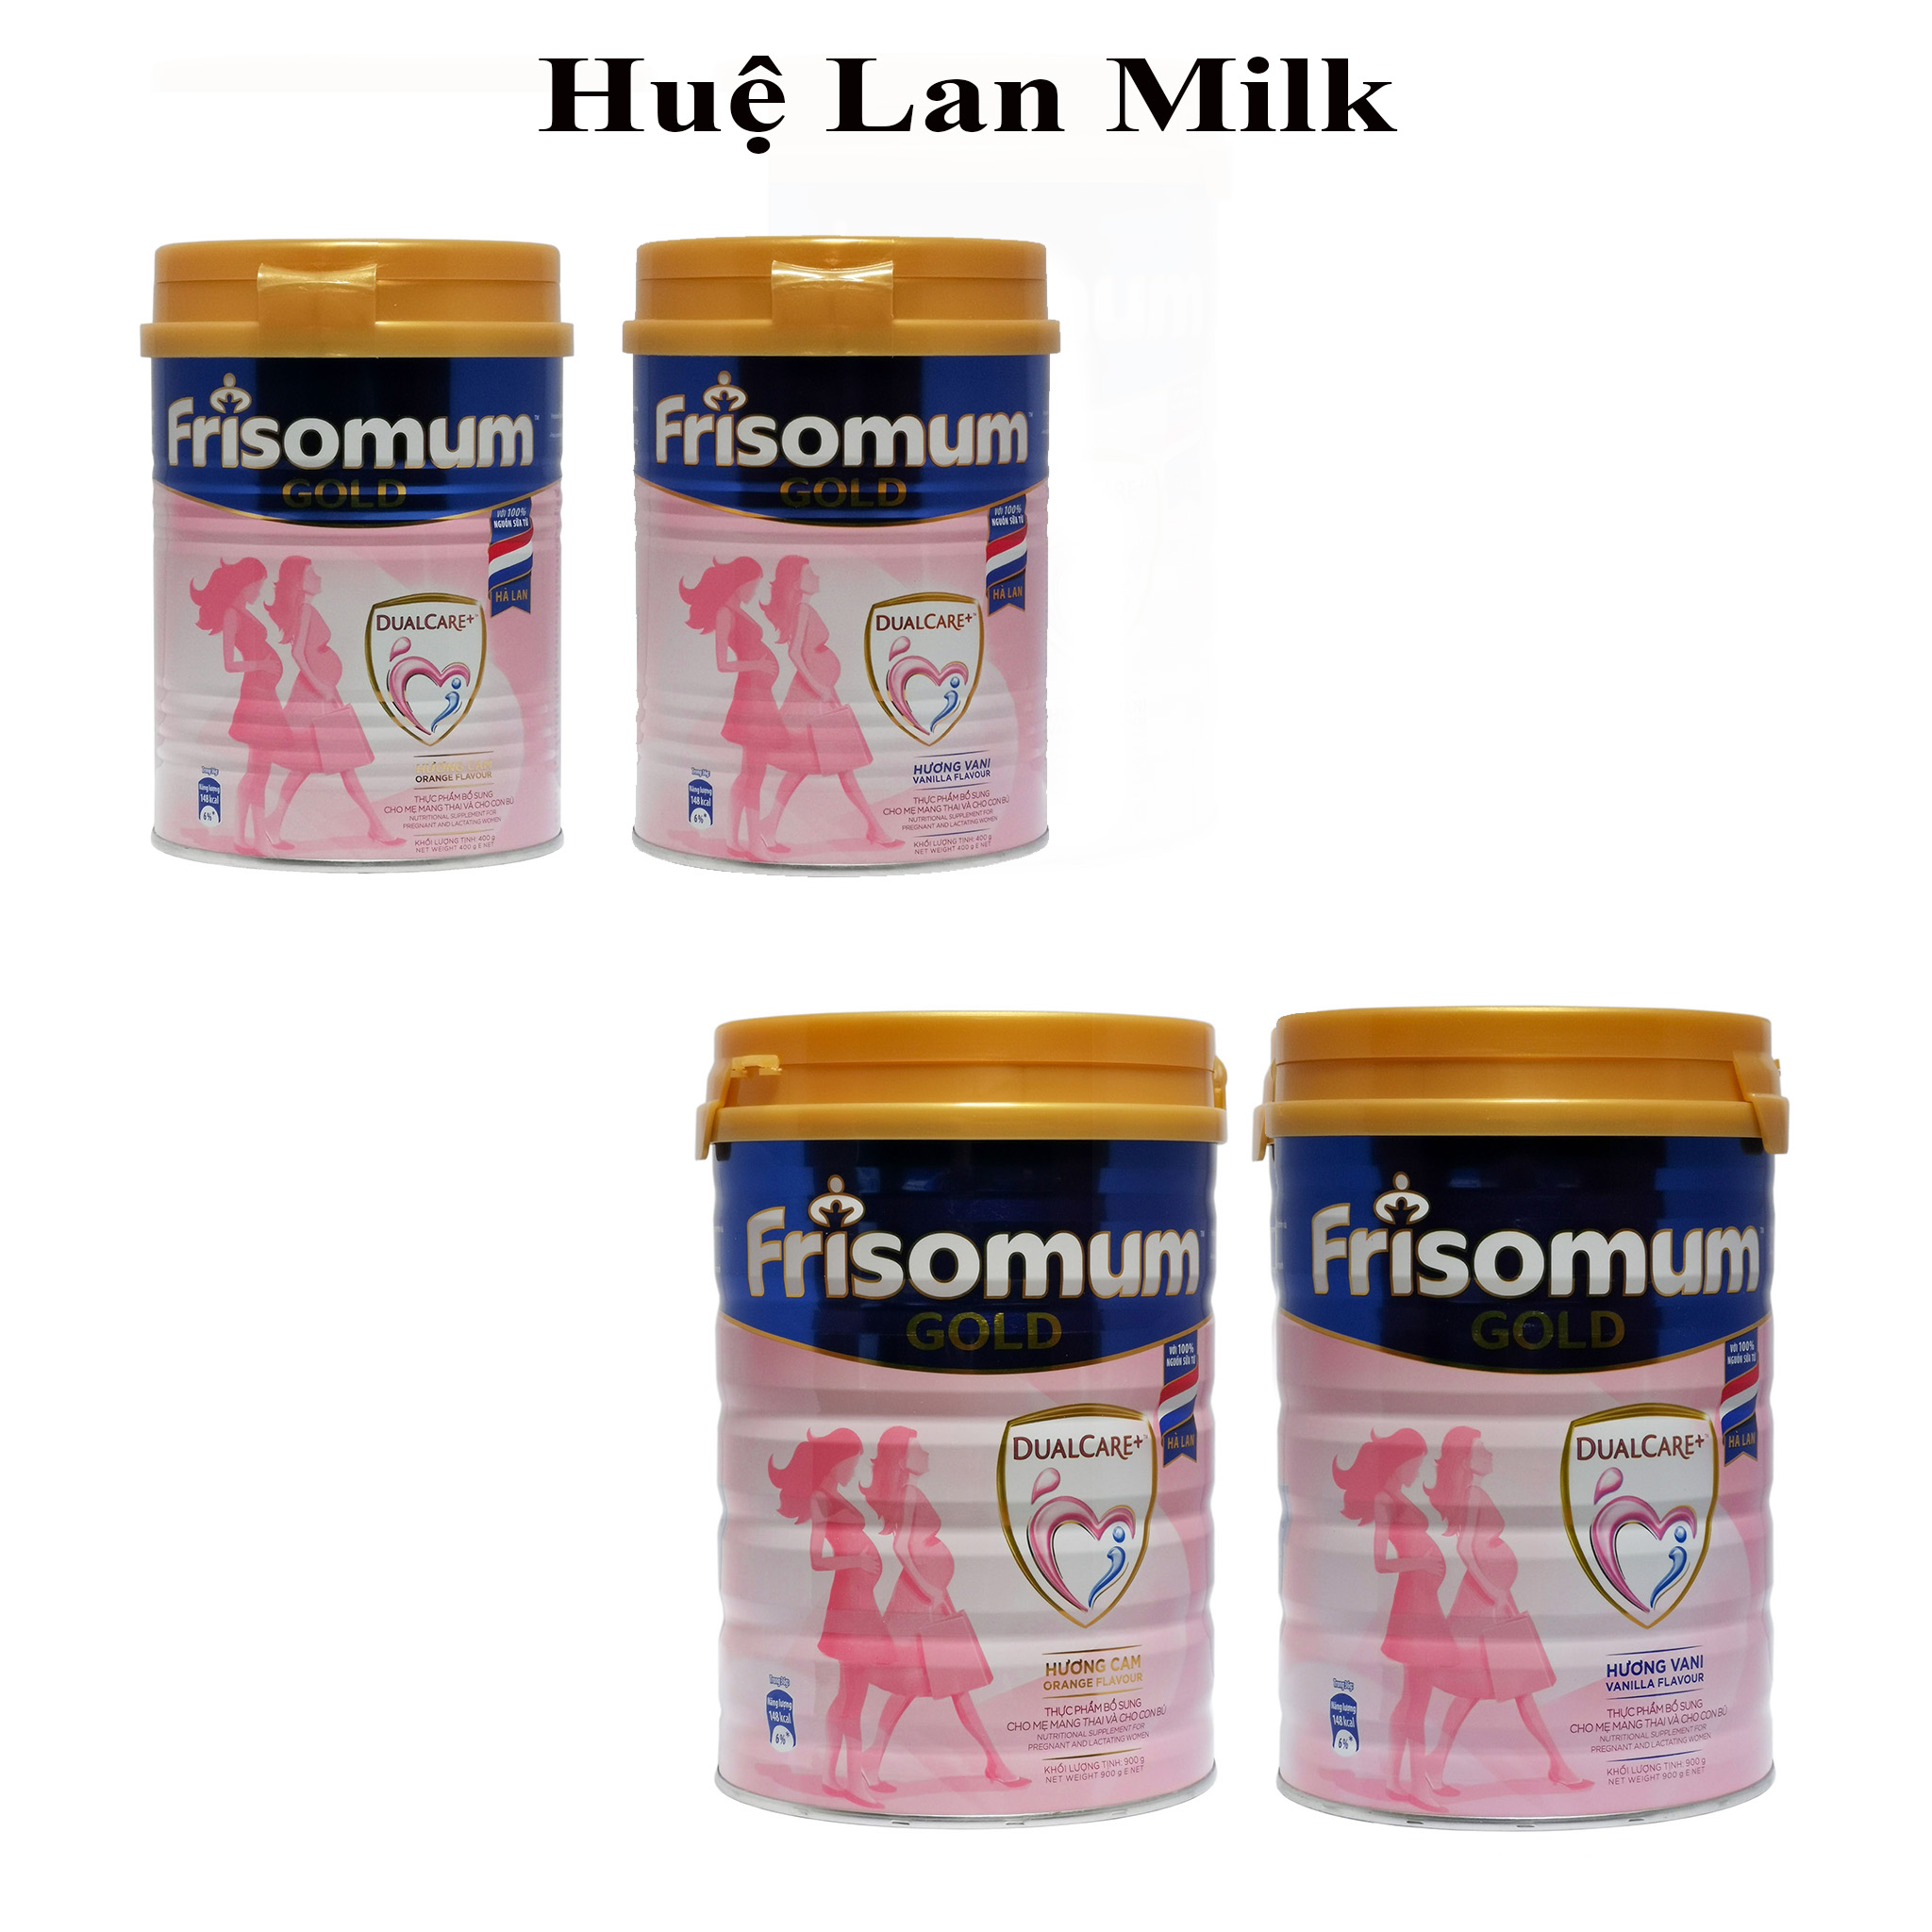 Sữa Bột Frisomum Gold Dualcare+ Hương Vani Hương Cam Hộp 900g 400g